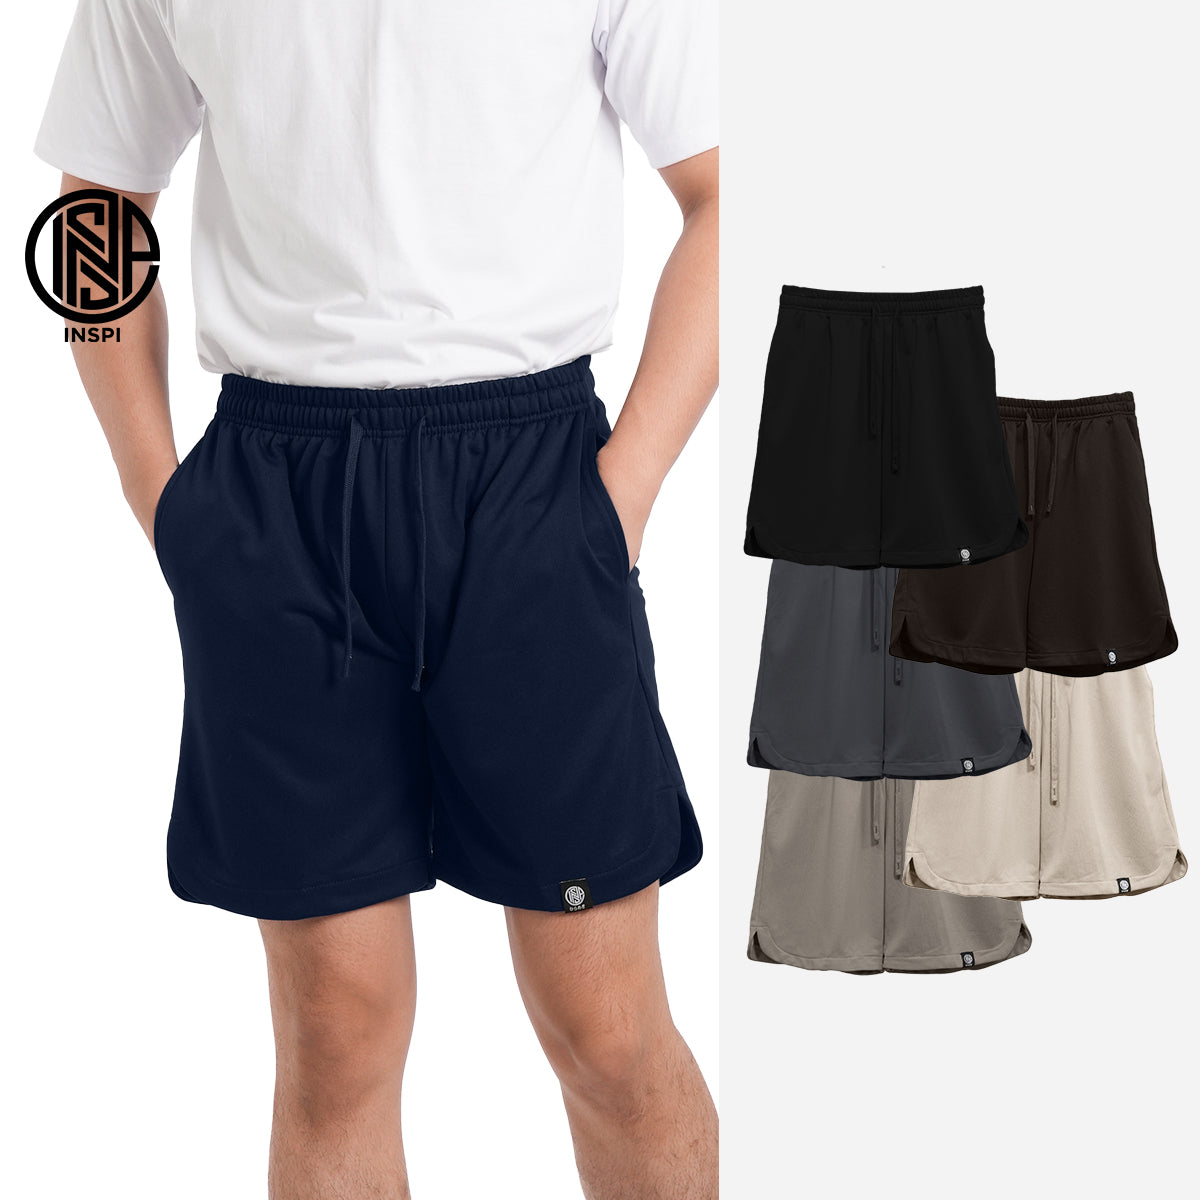 INSPI Knit Walking Shorts Light Khaki